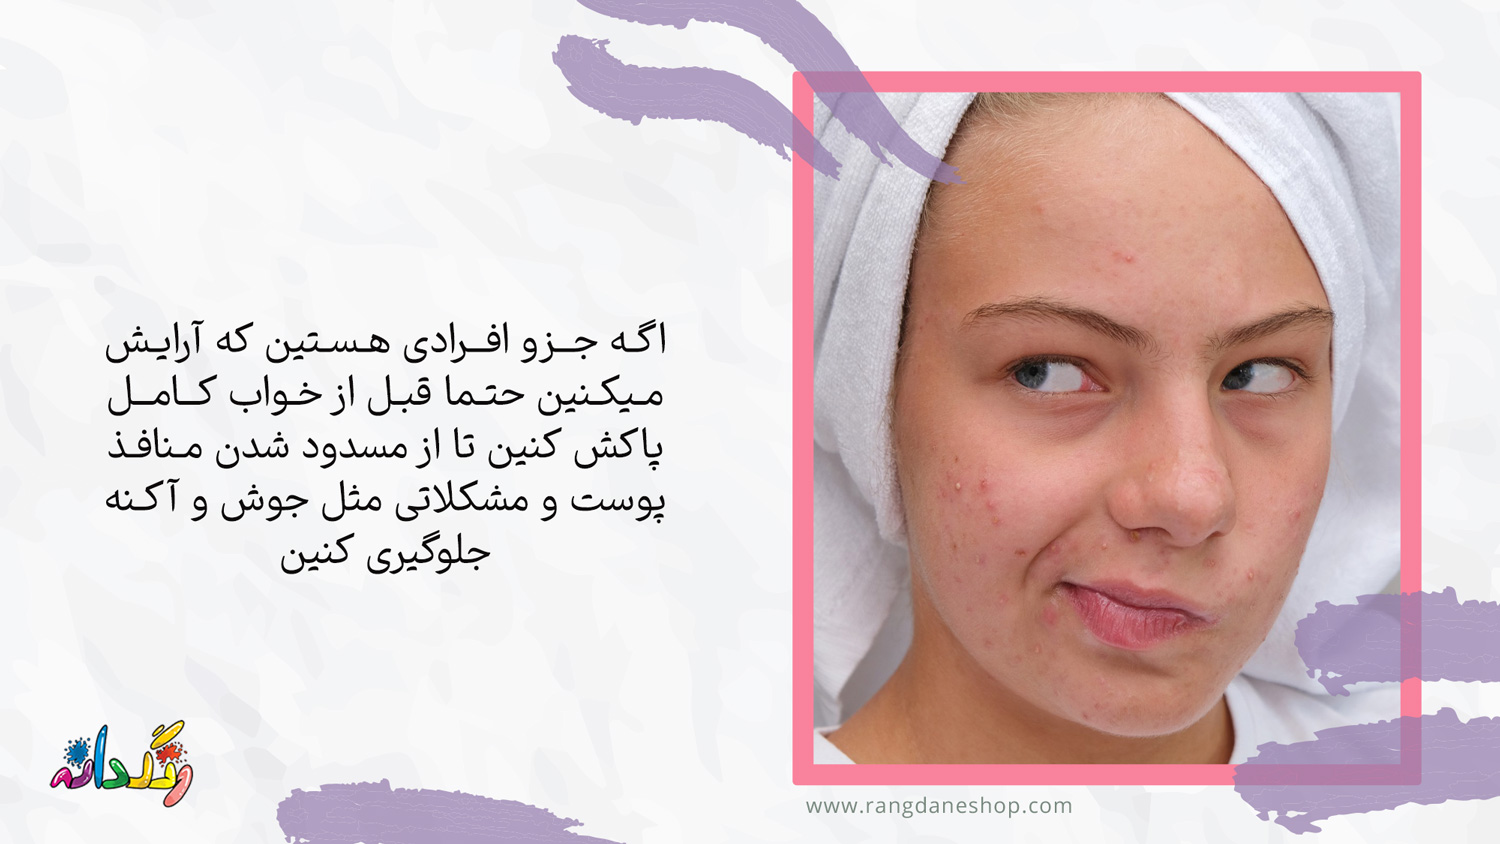 بسته شدن منافذ پوست یکی از عوارض استفاده مداوم از لوازم ارایشی بر روی پوست